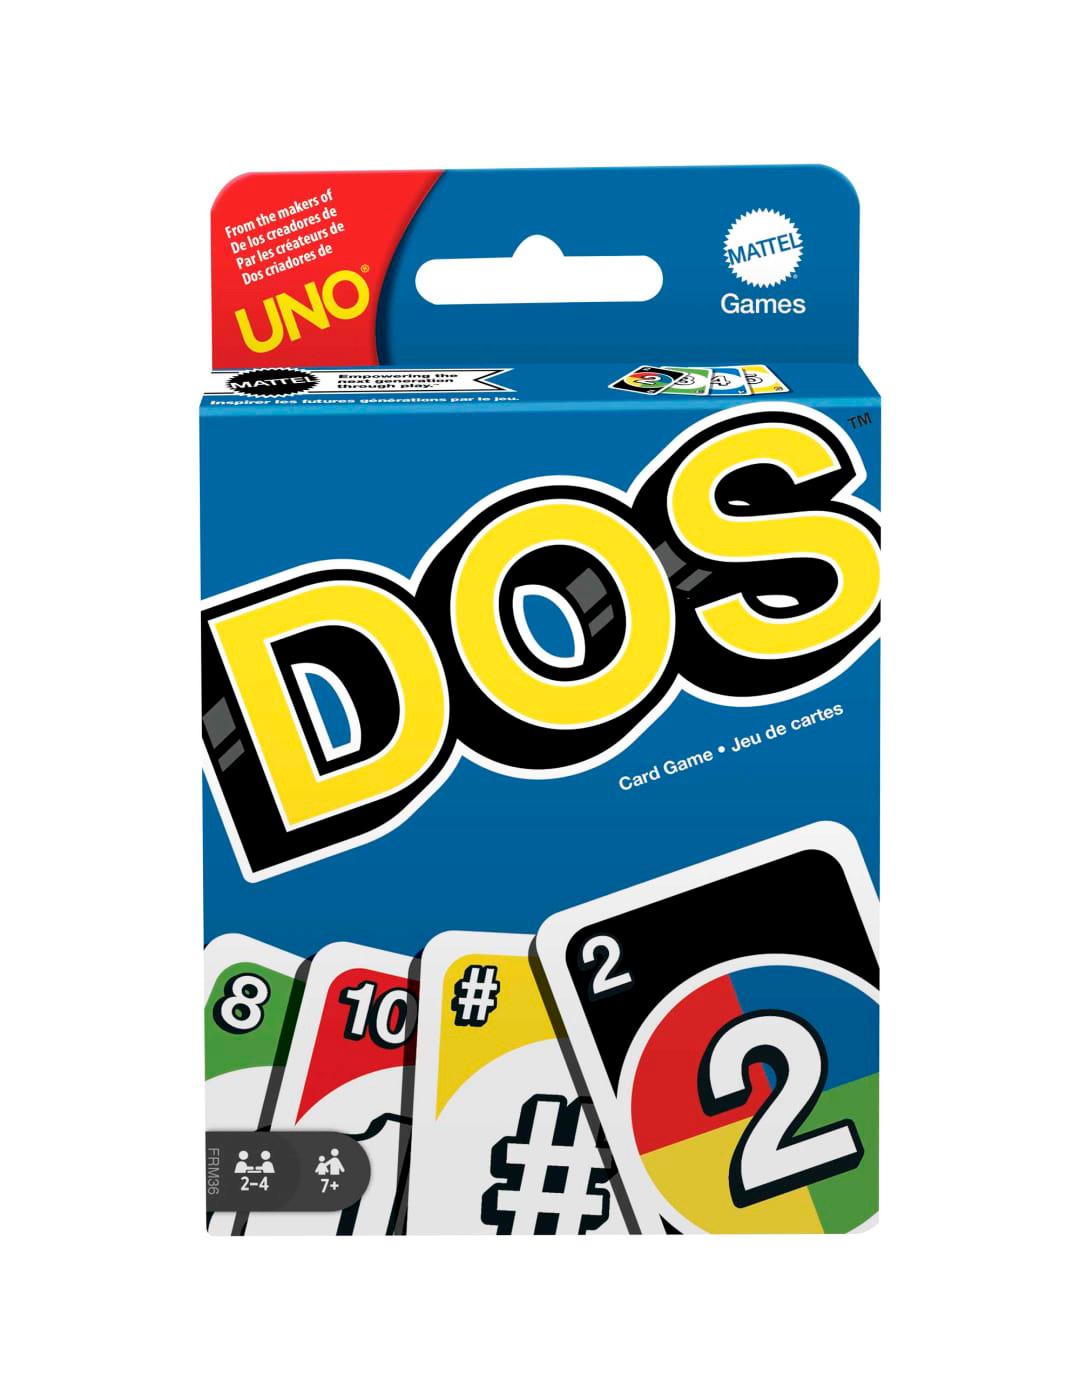 dos-card-game-shop-games-at-h-e-b